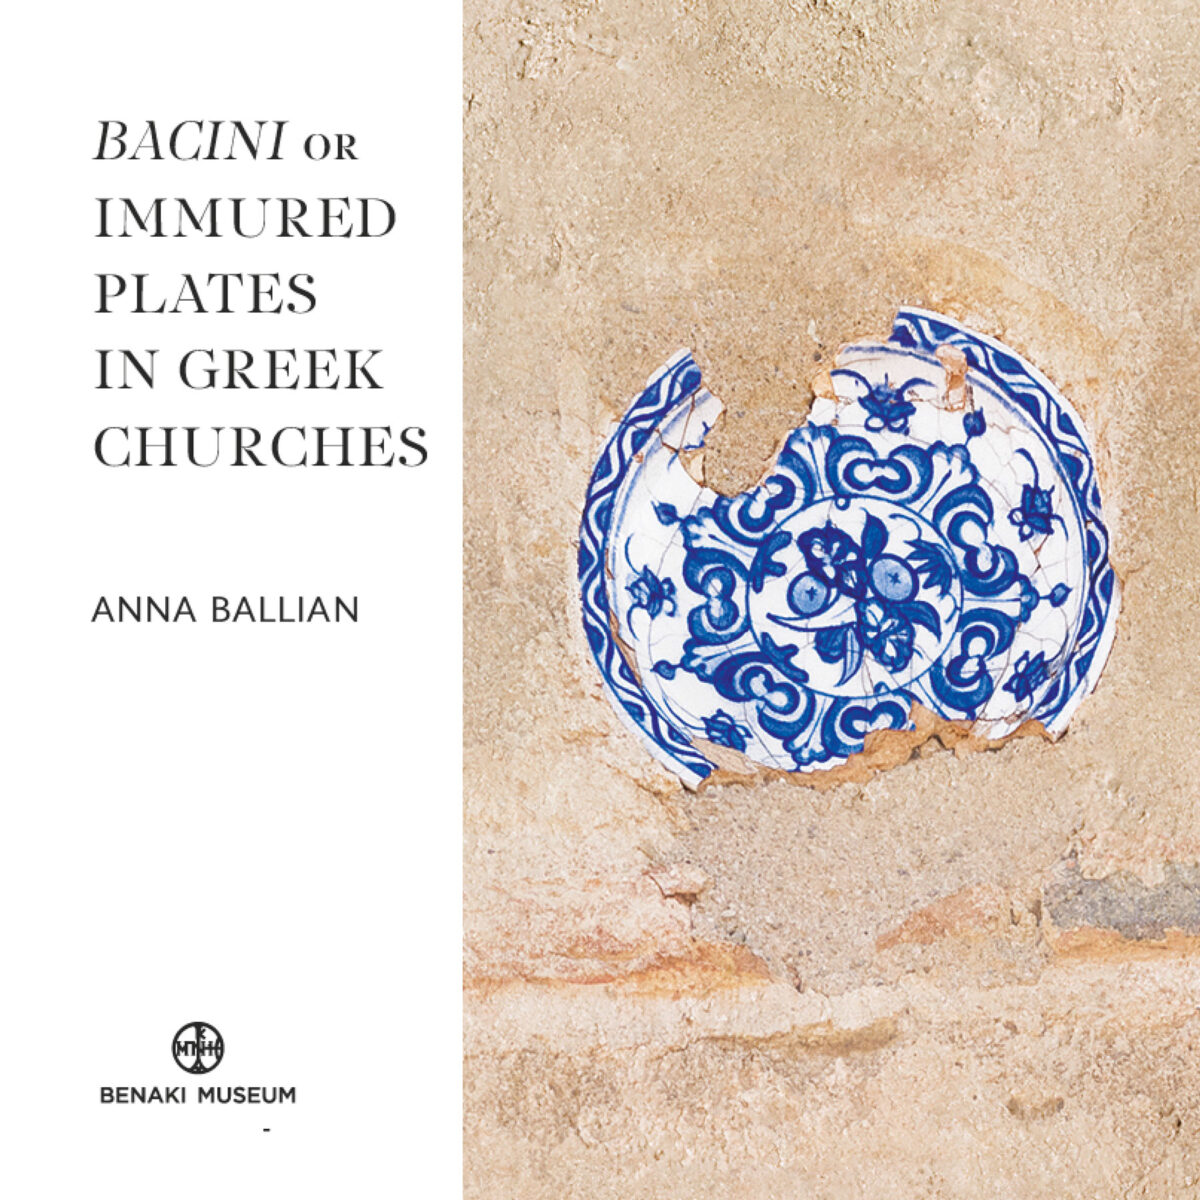 Bacini or immured plates in Greek Churches